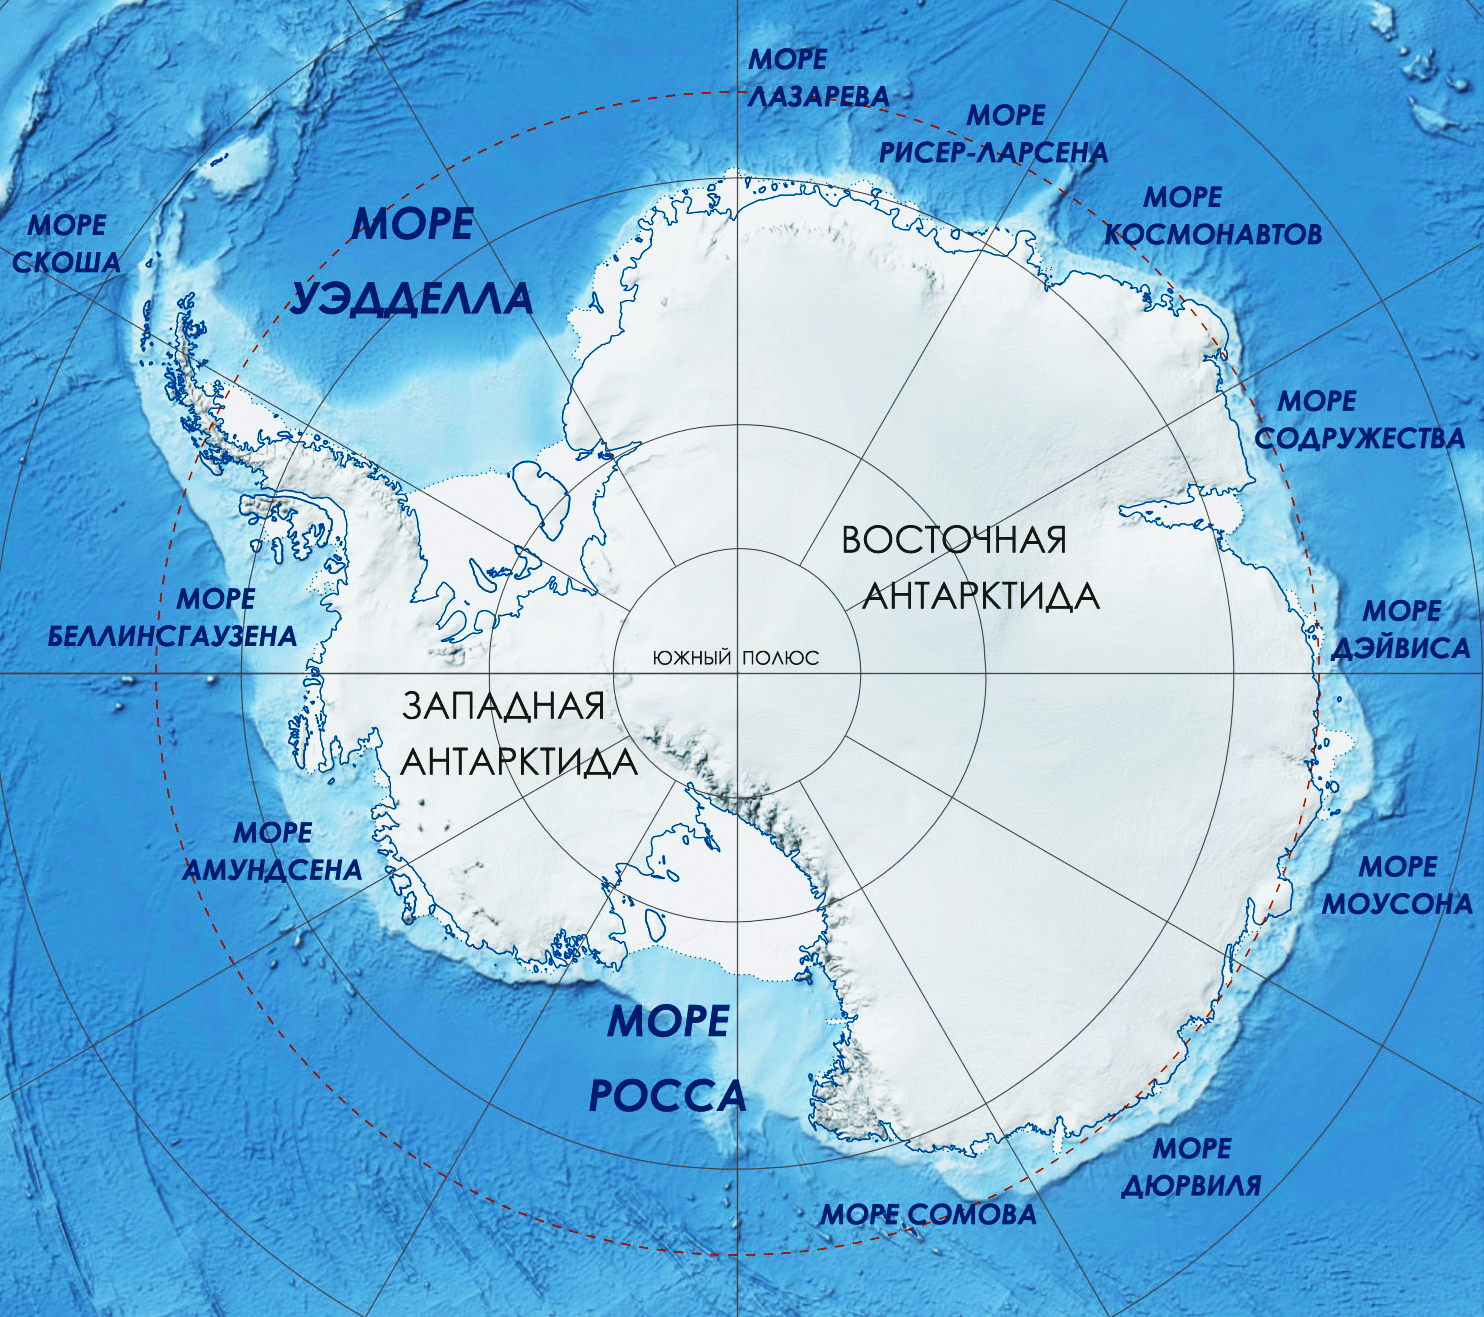 Вулкан эребус в антарктиде координаты. Шельфовый ледник Беллинсгаузена. Антарктида ледник Беллинсгаузена. Ледники Антарктиды на карте. Антарктида материк на карте.